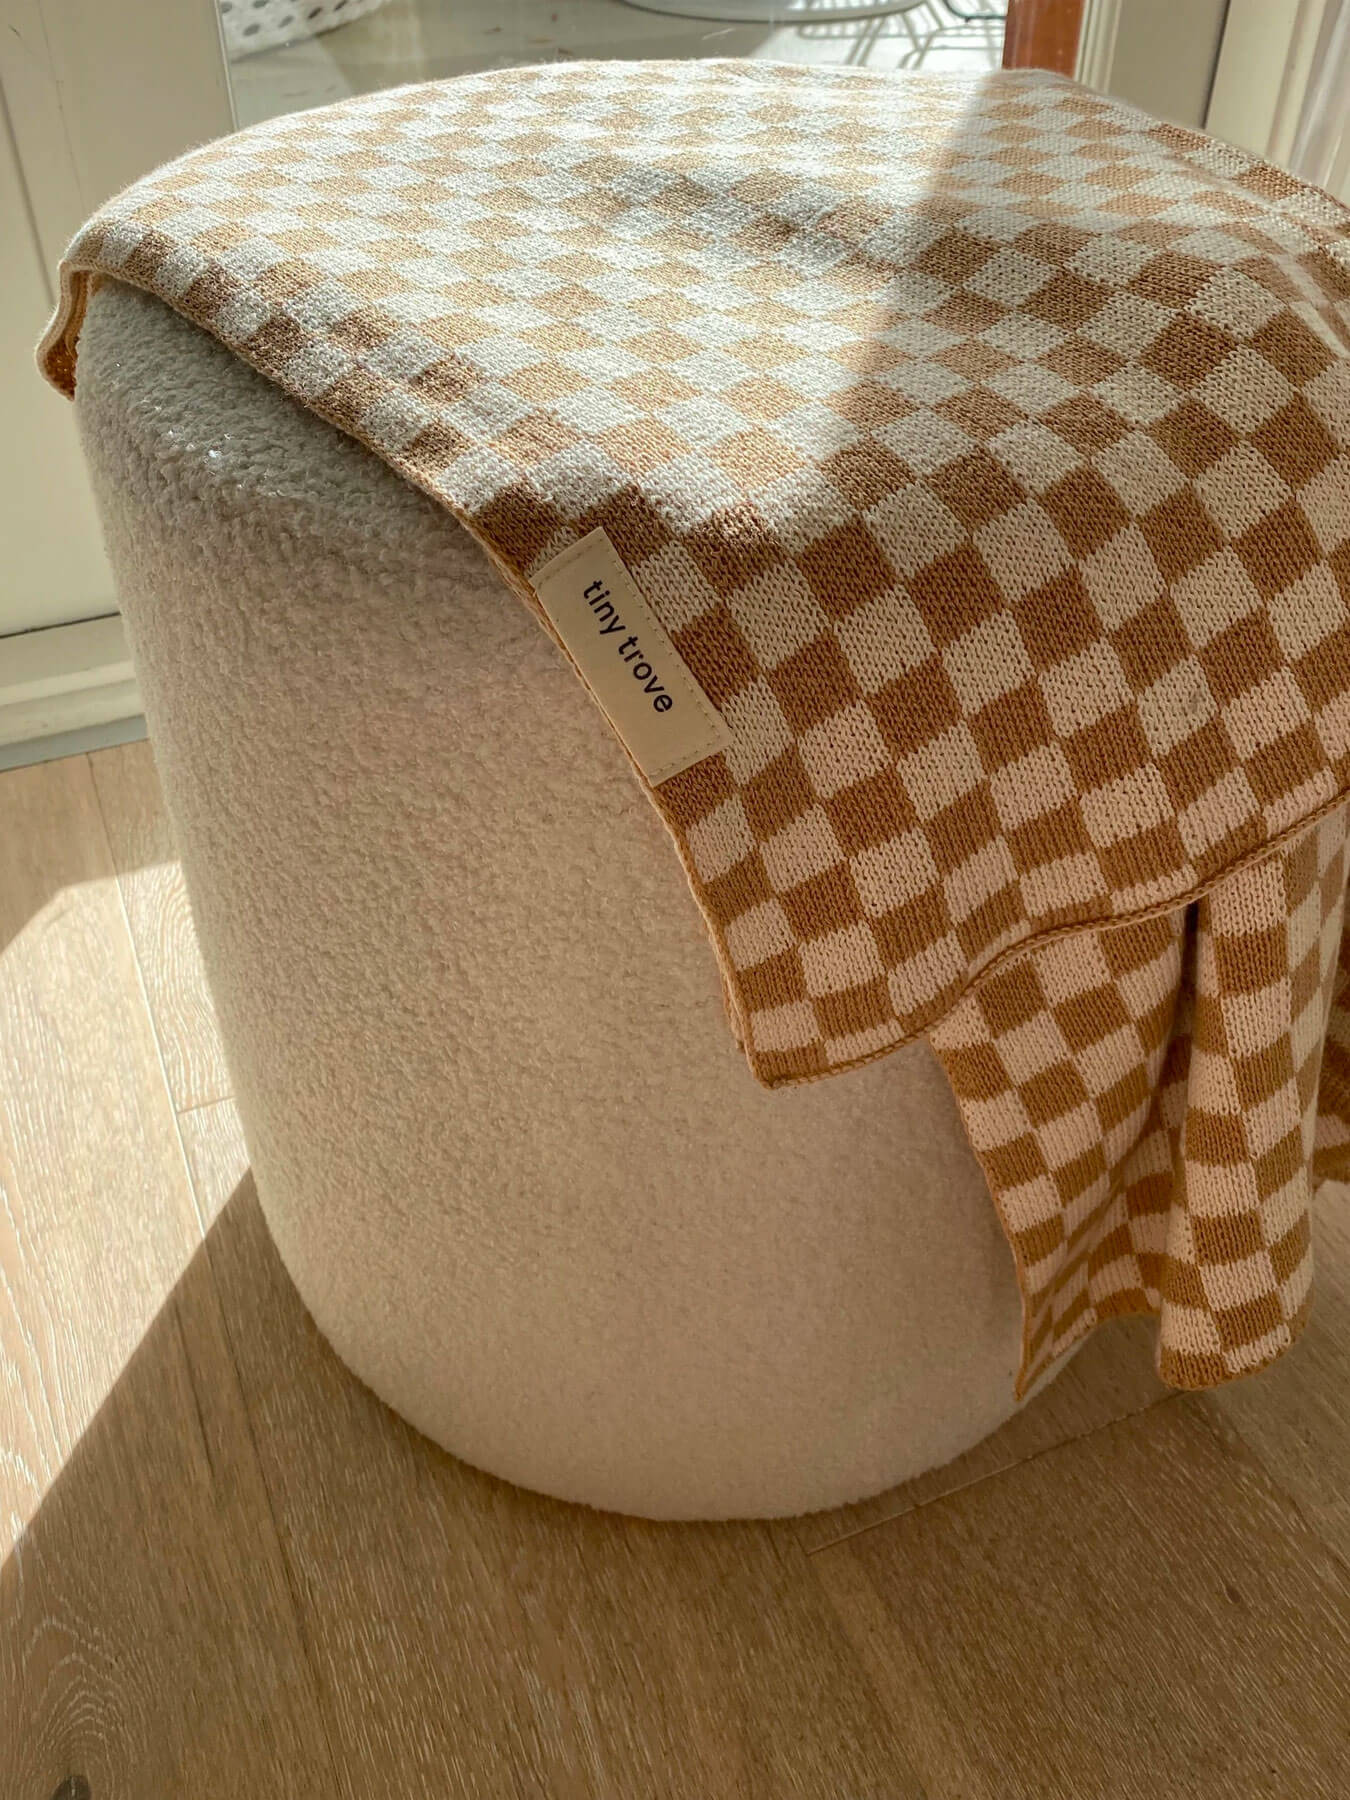 Revie Checkerboard Knit Blanket - Beige